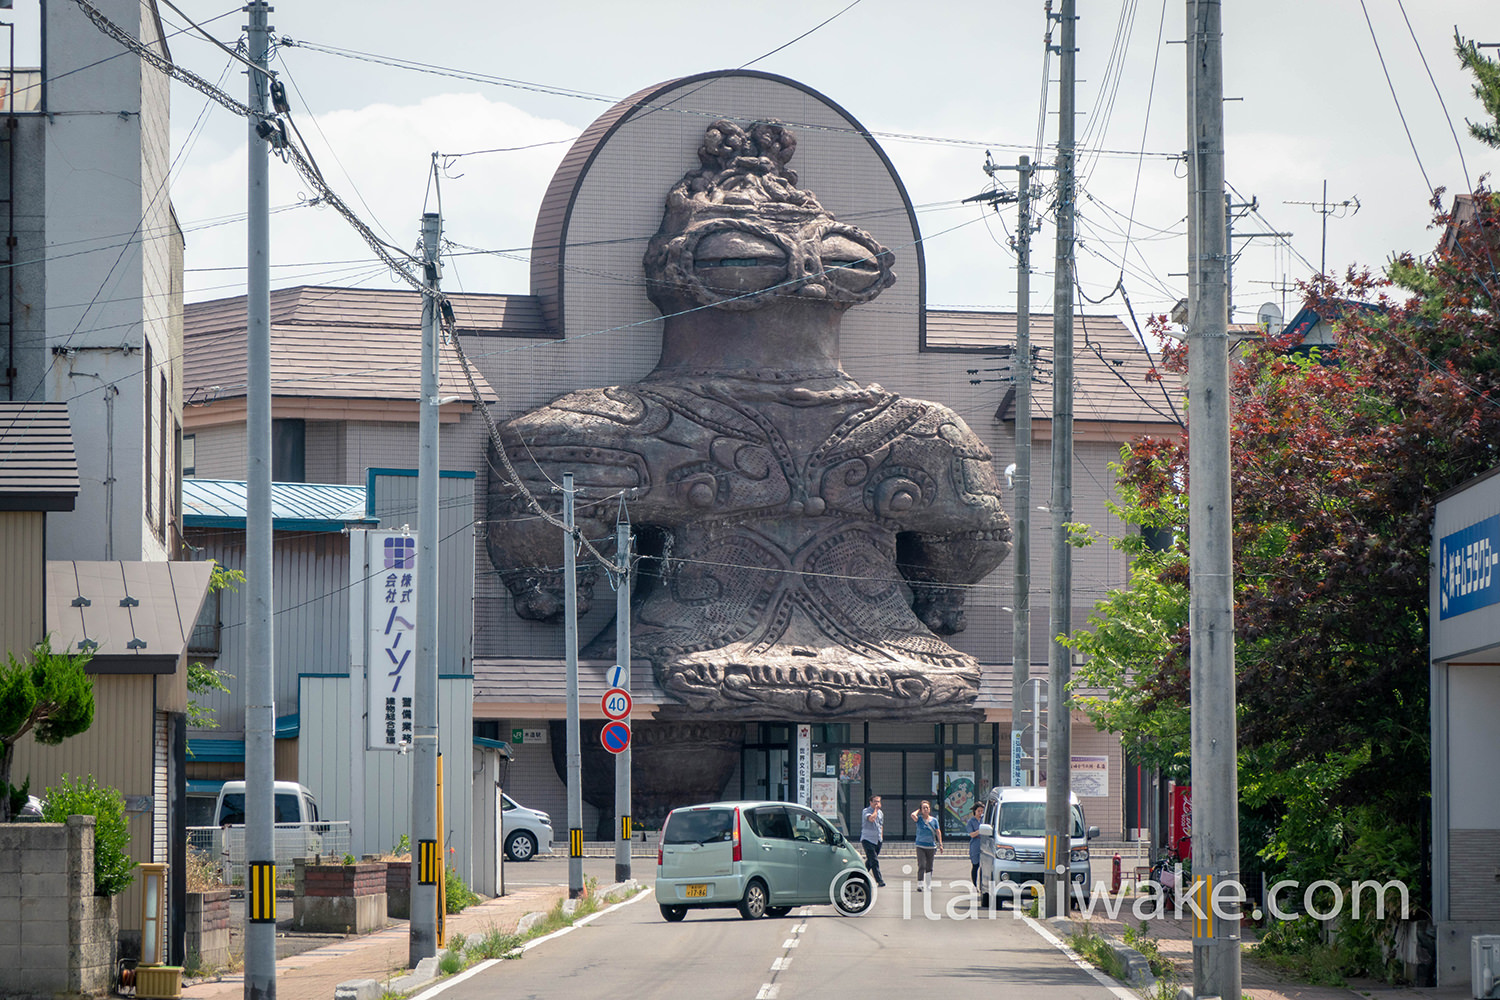 巨大な土偶と一体化した面白い駅、青森県の木造駅へ！神がかったタイミングの良さで誕生した珍建築